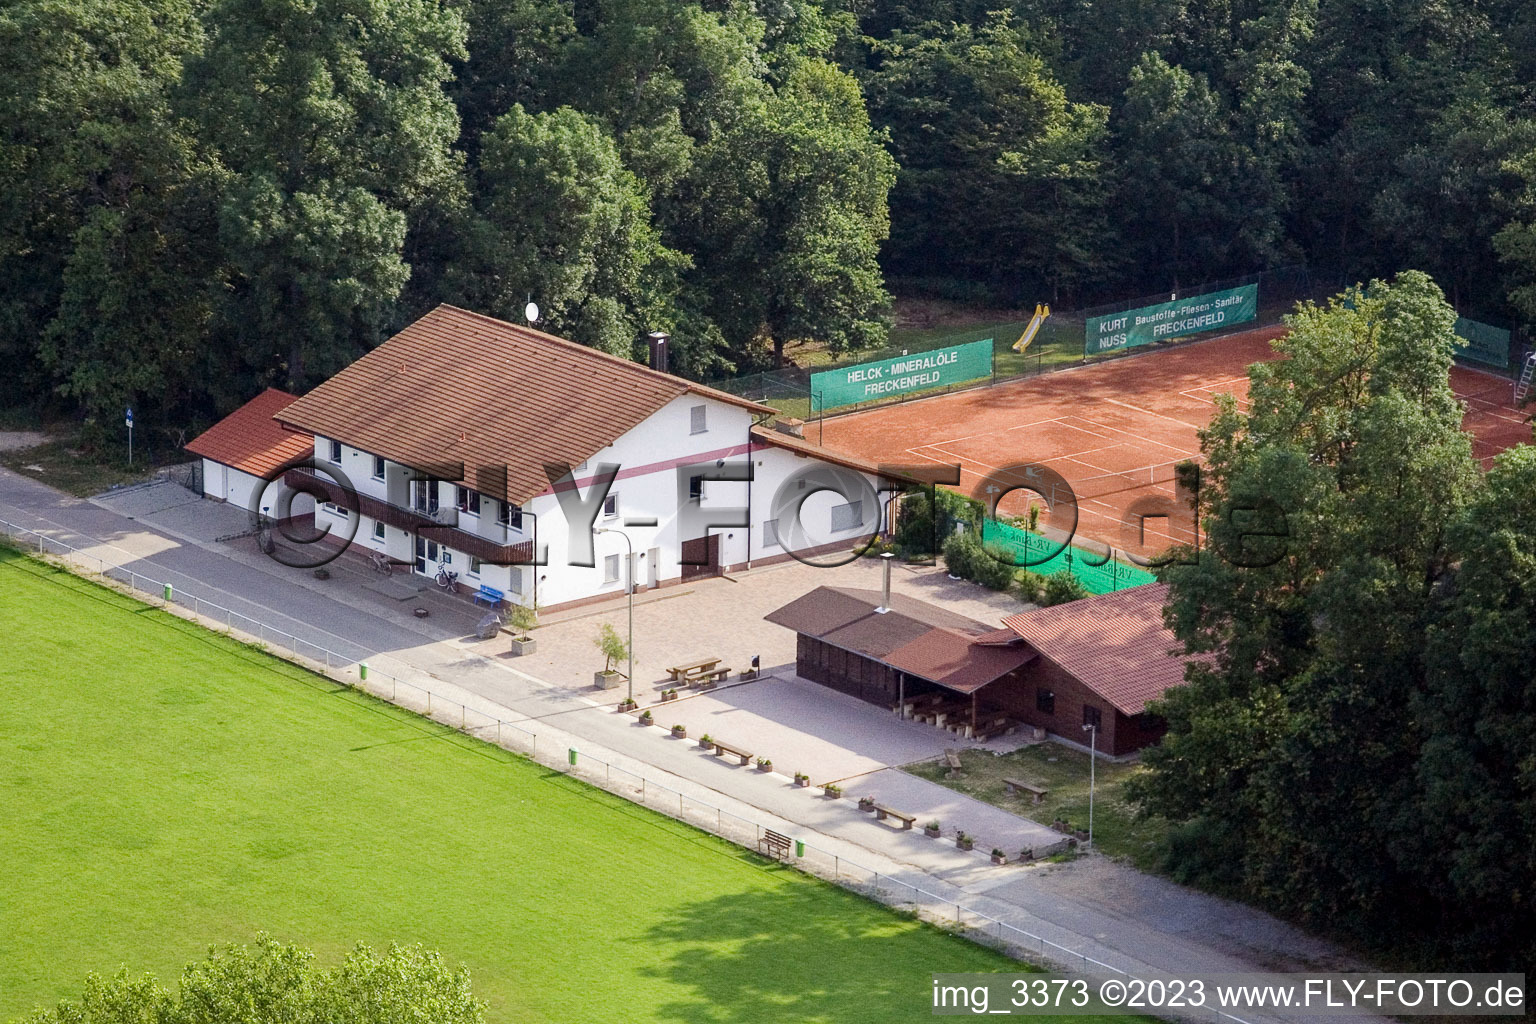 Vue aérienne de Terrain de sport à Freckenfeld dans le département Rhénanie-Palatinat, Allemagne